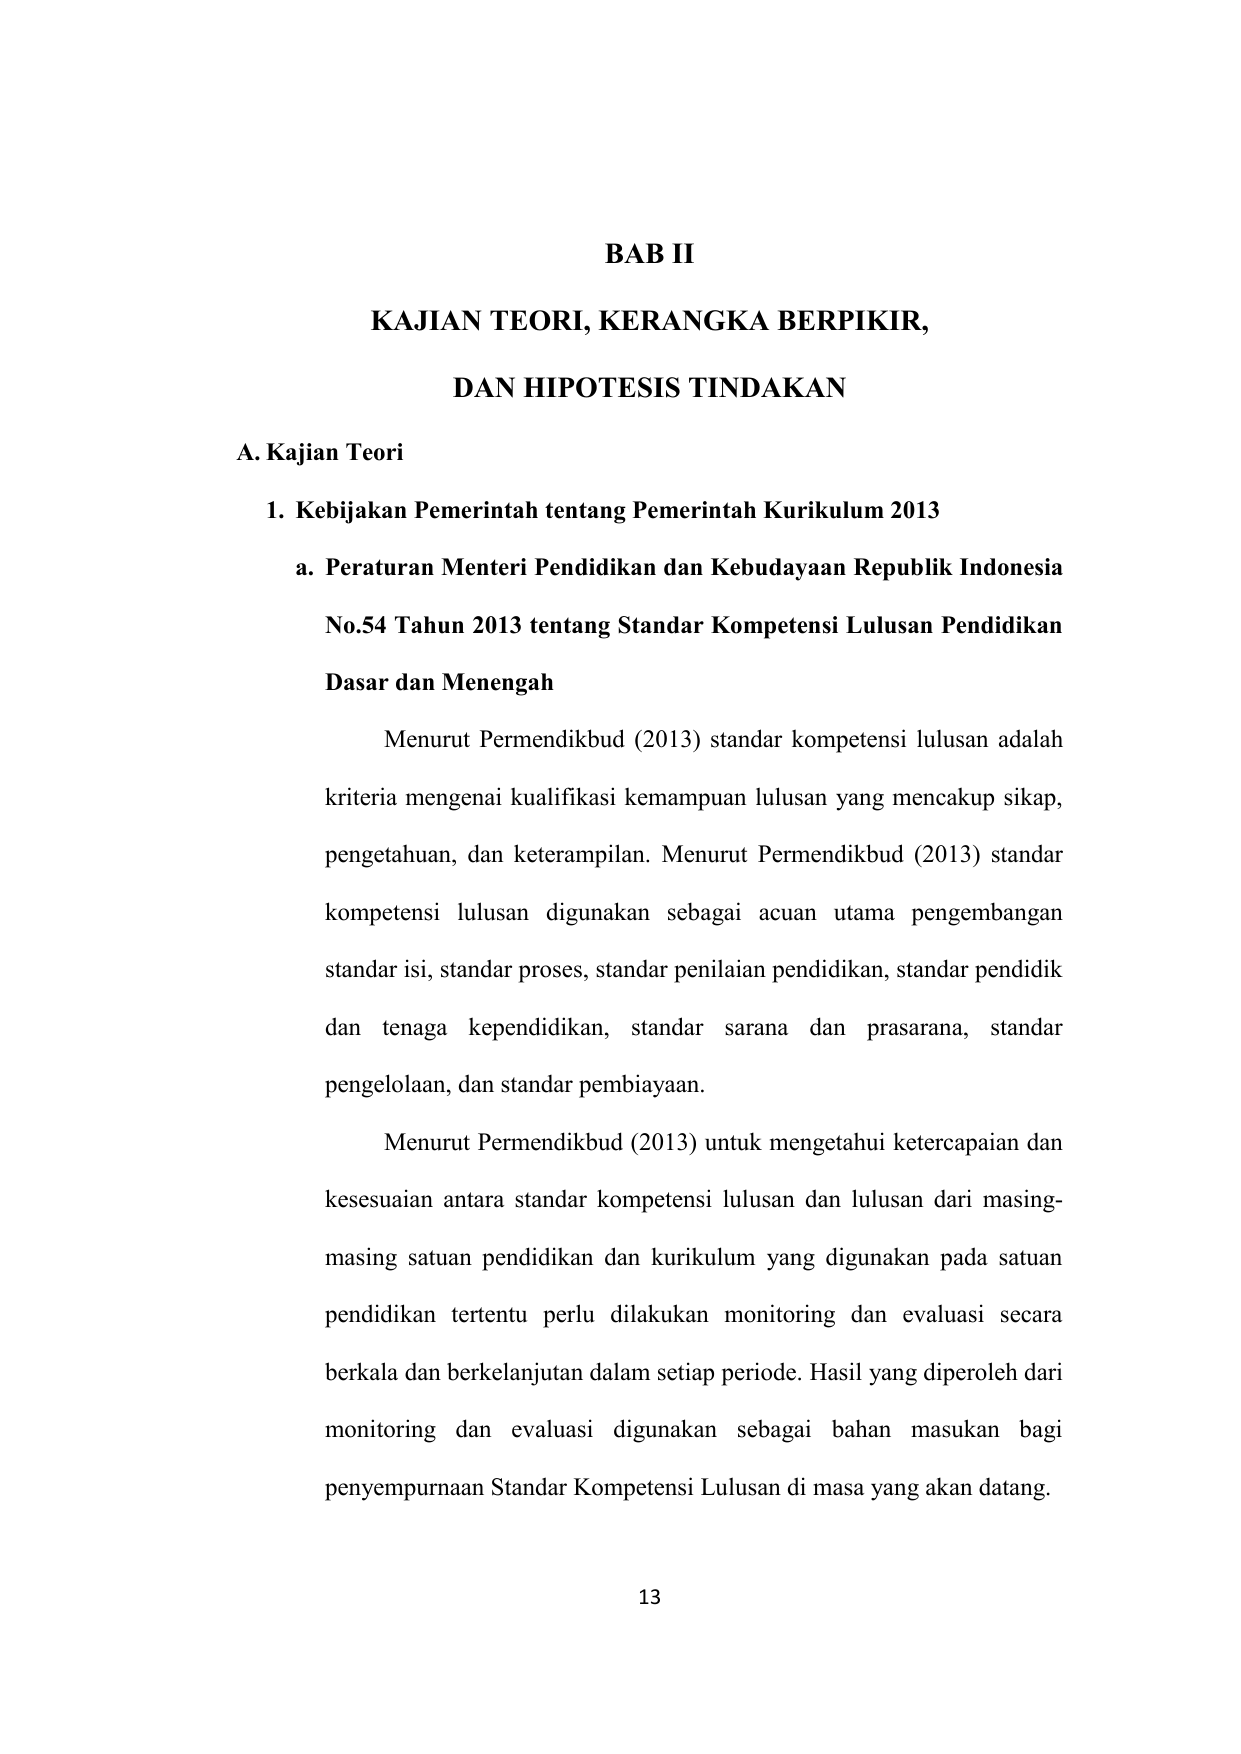 Peraturan Menteri Pendidikan dan Kebudayaan Republik Indonesia No 54 Tahun 2013 tentang Standar Kompetensi Lulusan Pendidikan Dasar